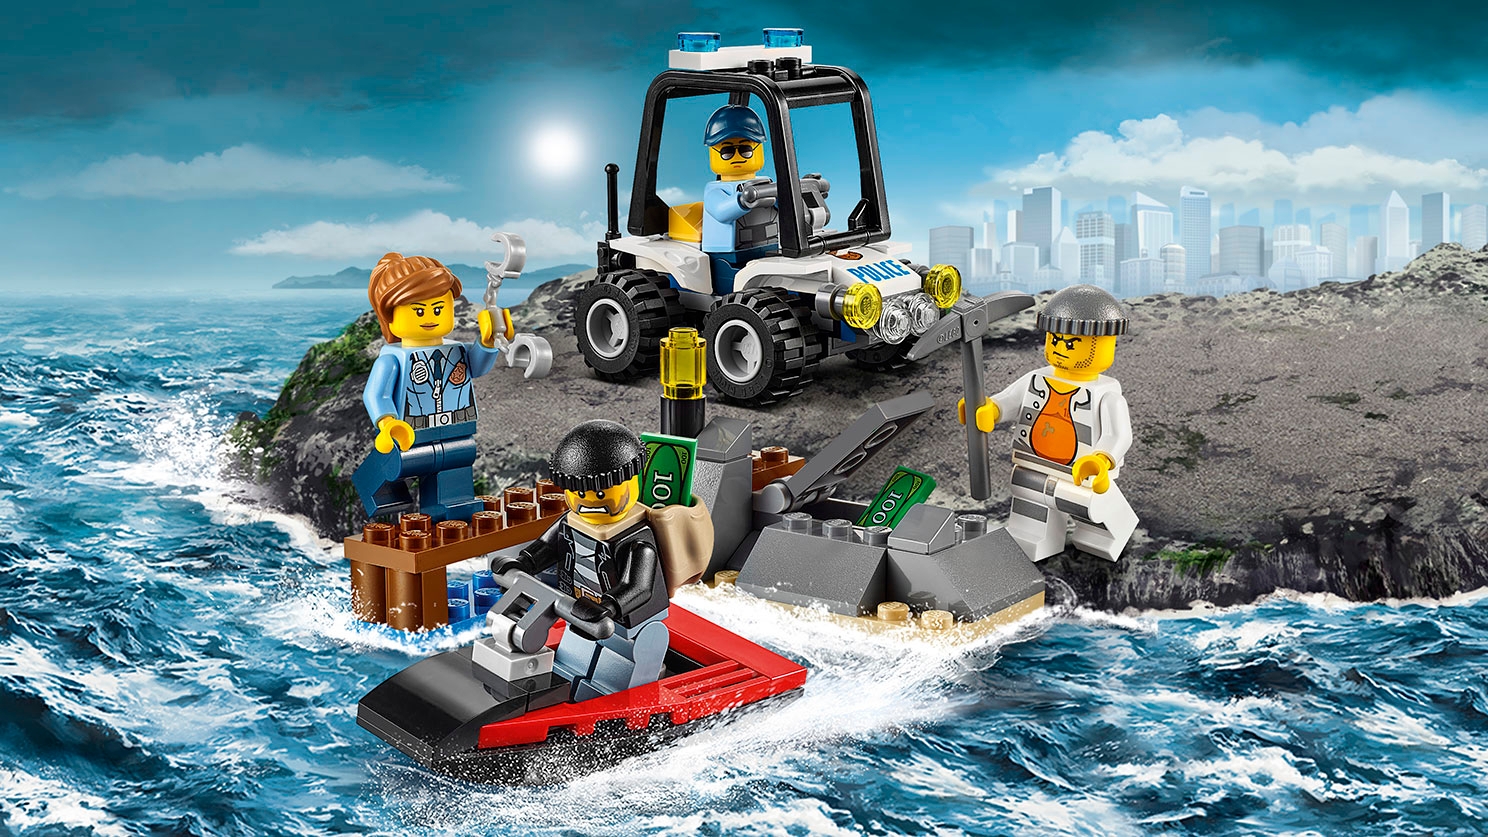 Onaangenaam Boekhouding Detecteerbaar Gevangeniseiland starterset 60127 - LEGO® City sets - LEGO.com voor kinderen